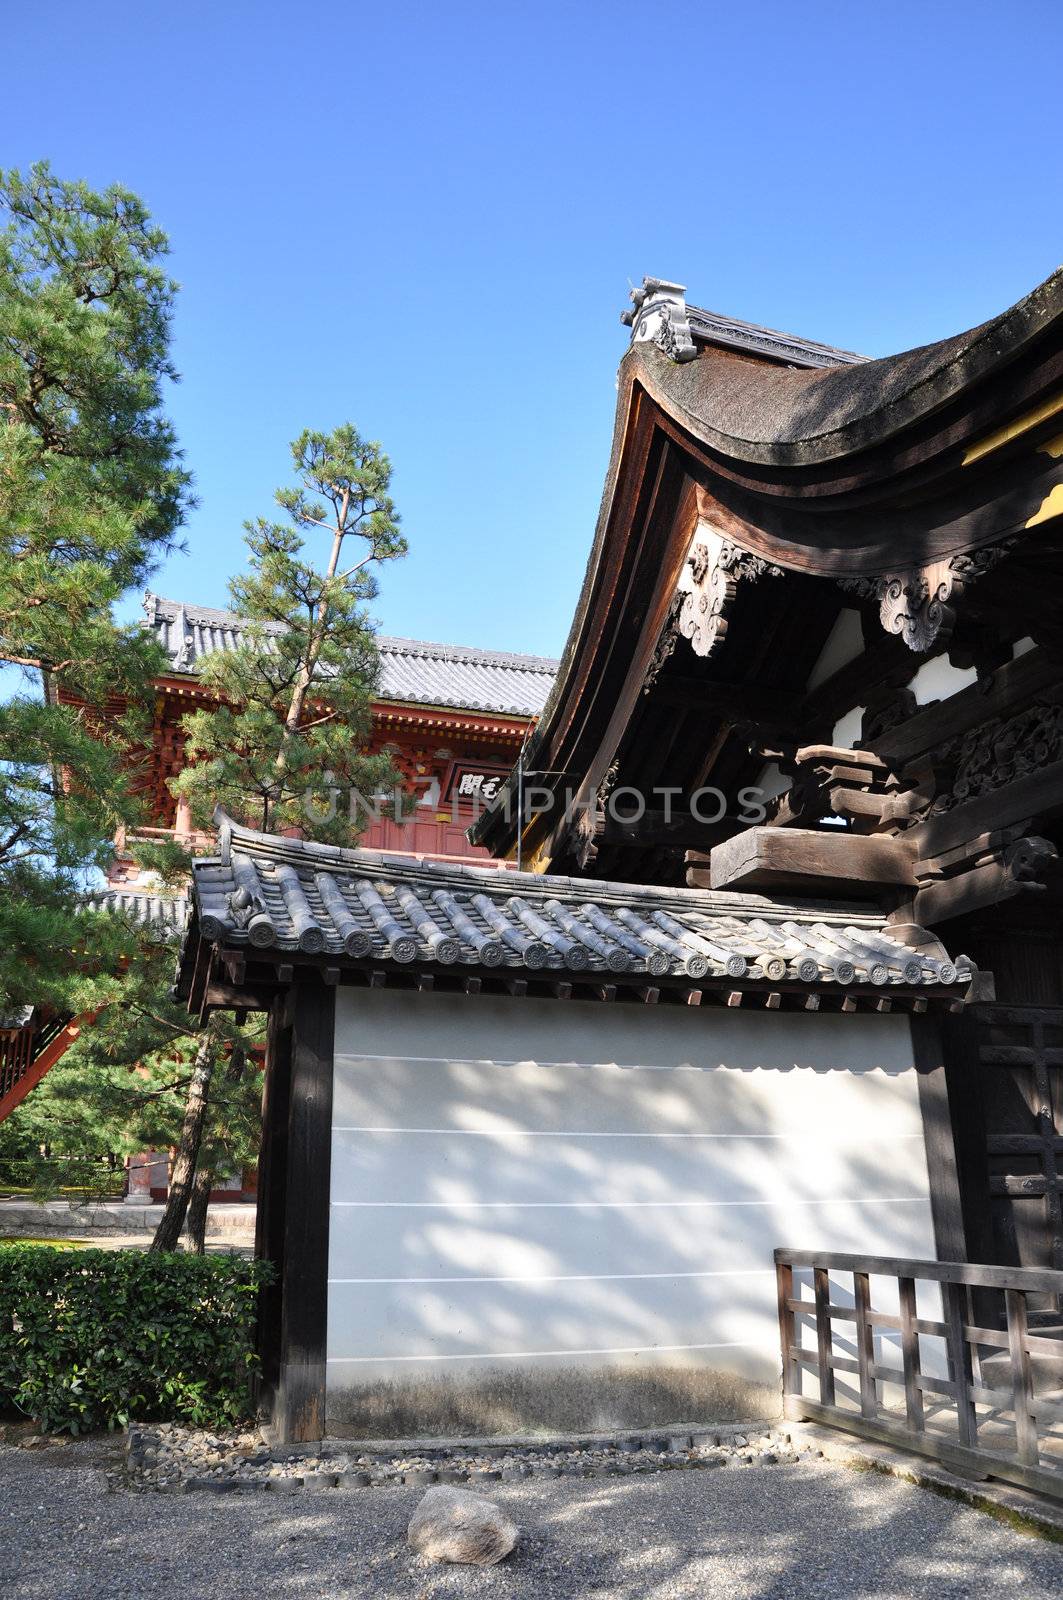 Famous Daitokuji (Daitoku-ji) Temple. Buddhist zen temple of Rinzai school, in Kyoto, Japan